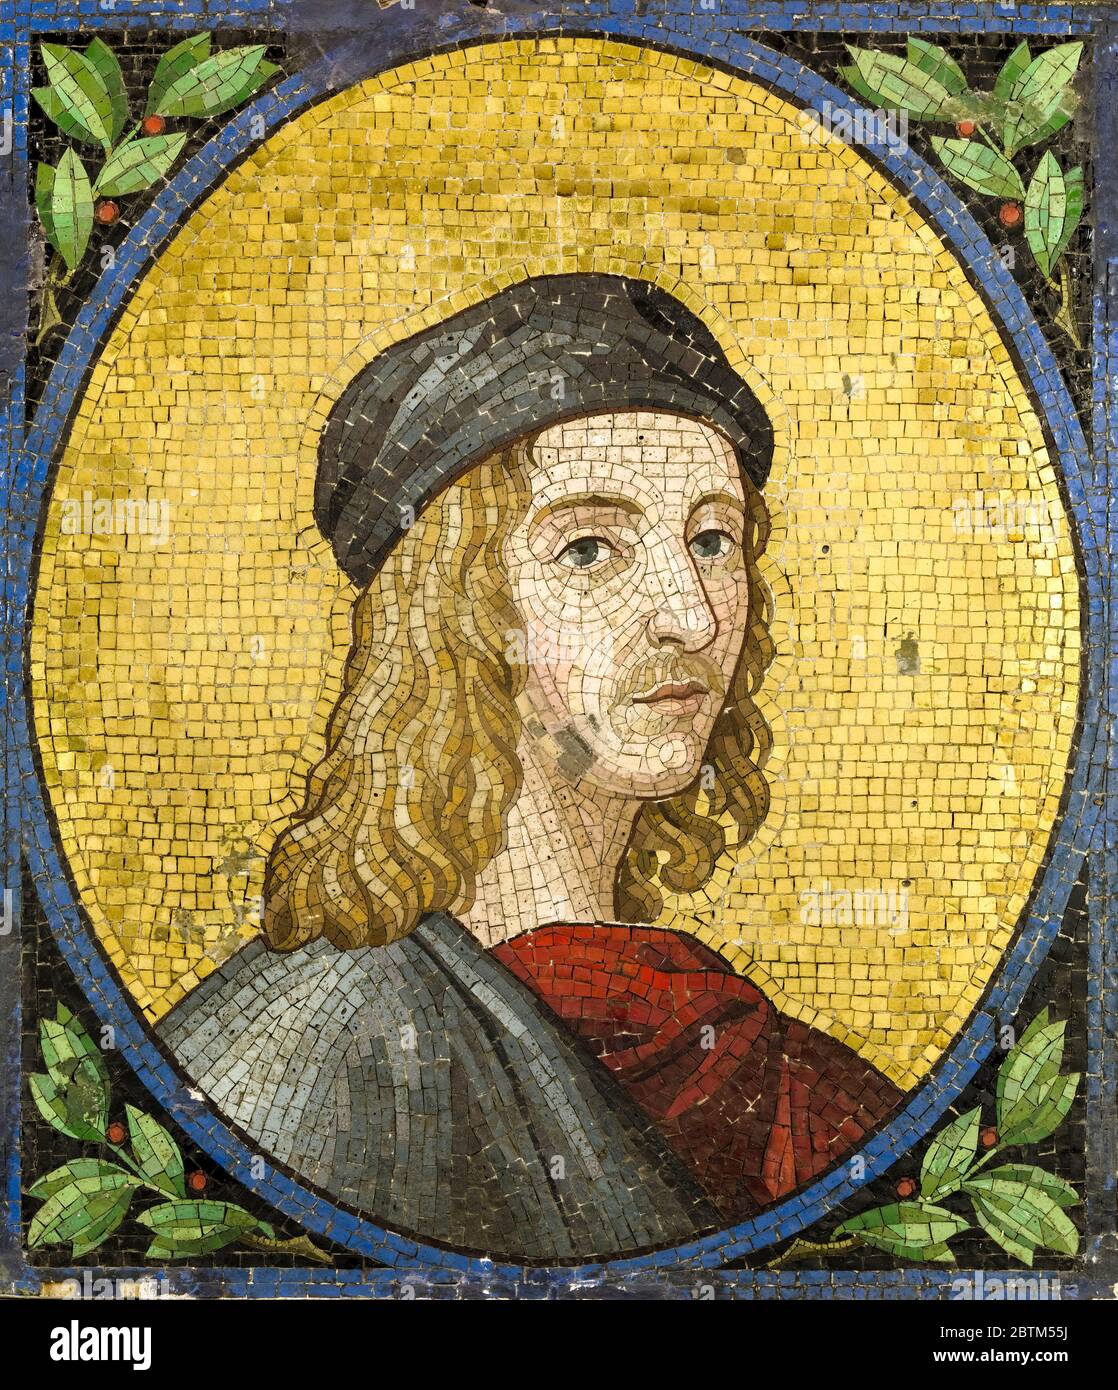 Raffaello Sanzio da Urbino, Raphael (1483-1520), Italian painter and architect, portrait mosaic, undated, possibly 19th or 20th Century Stock Photo